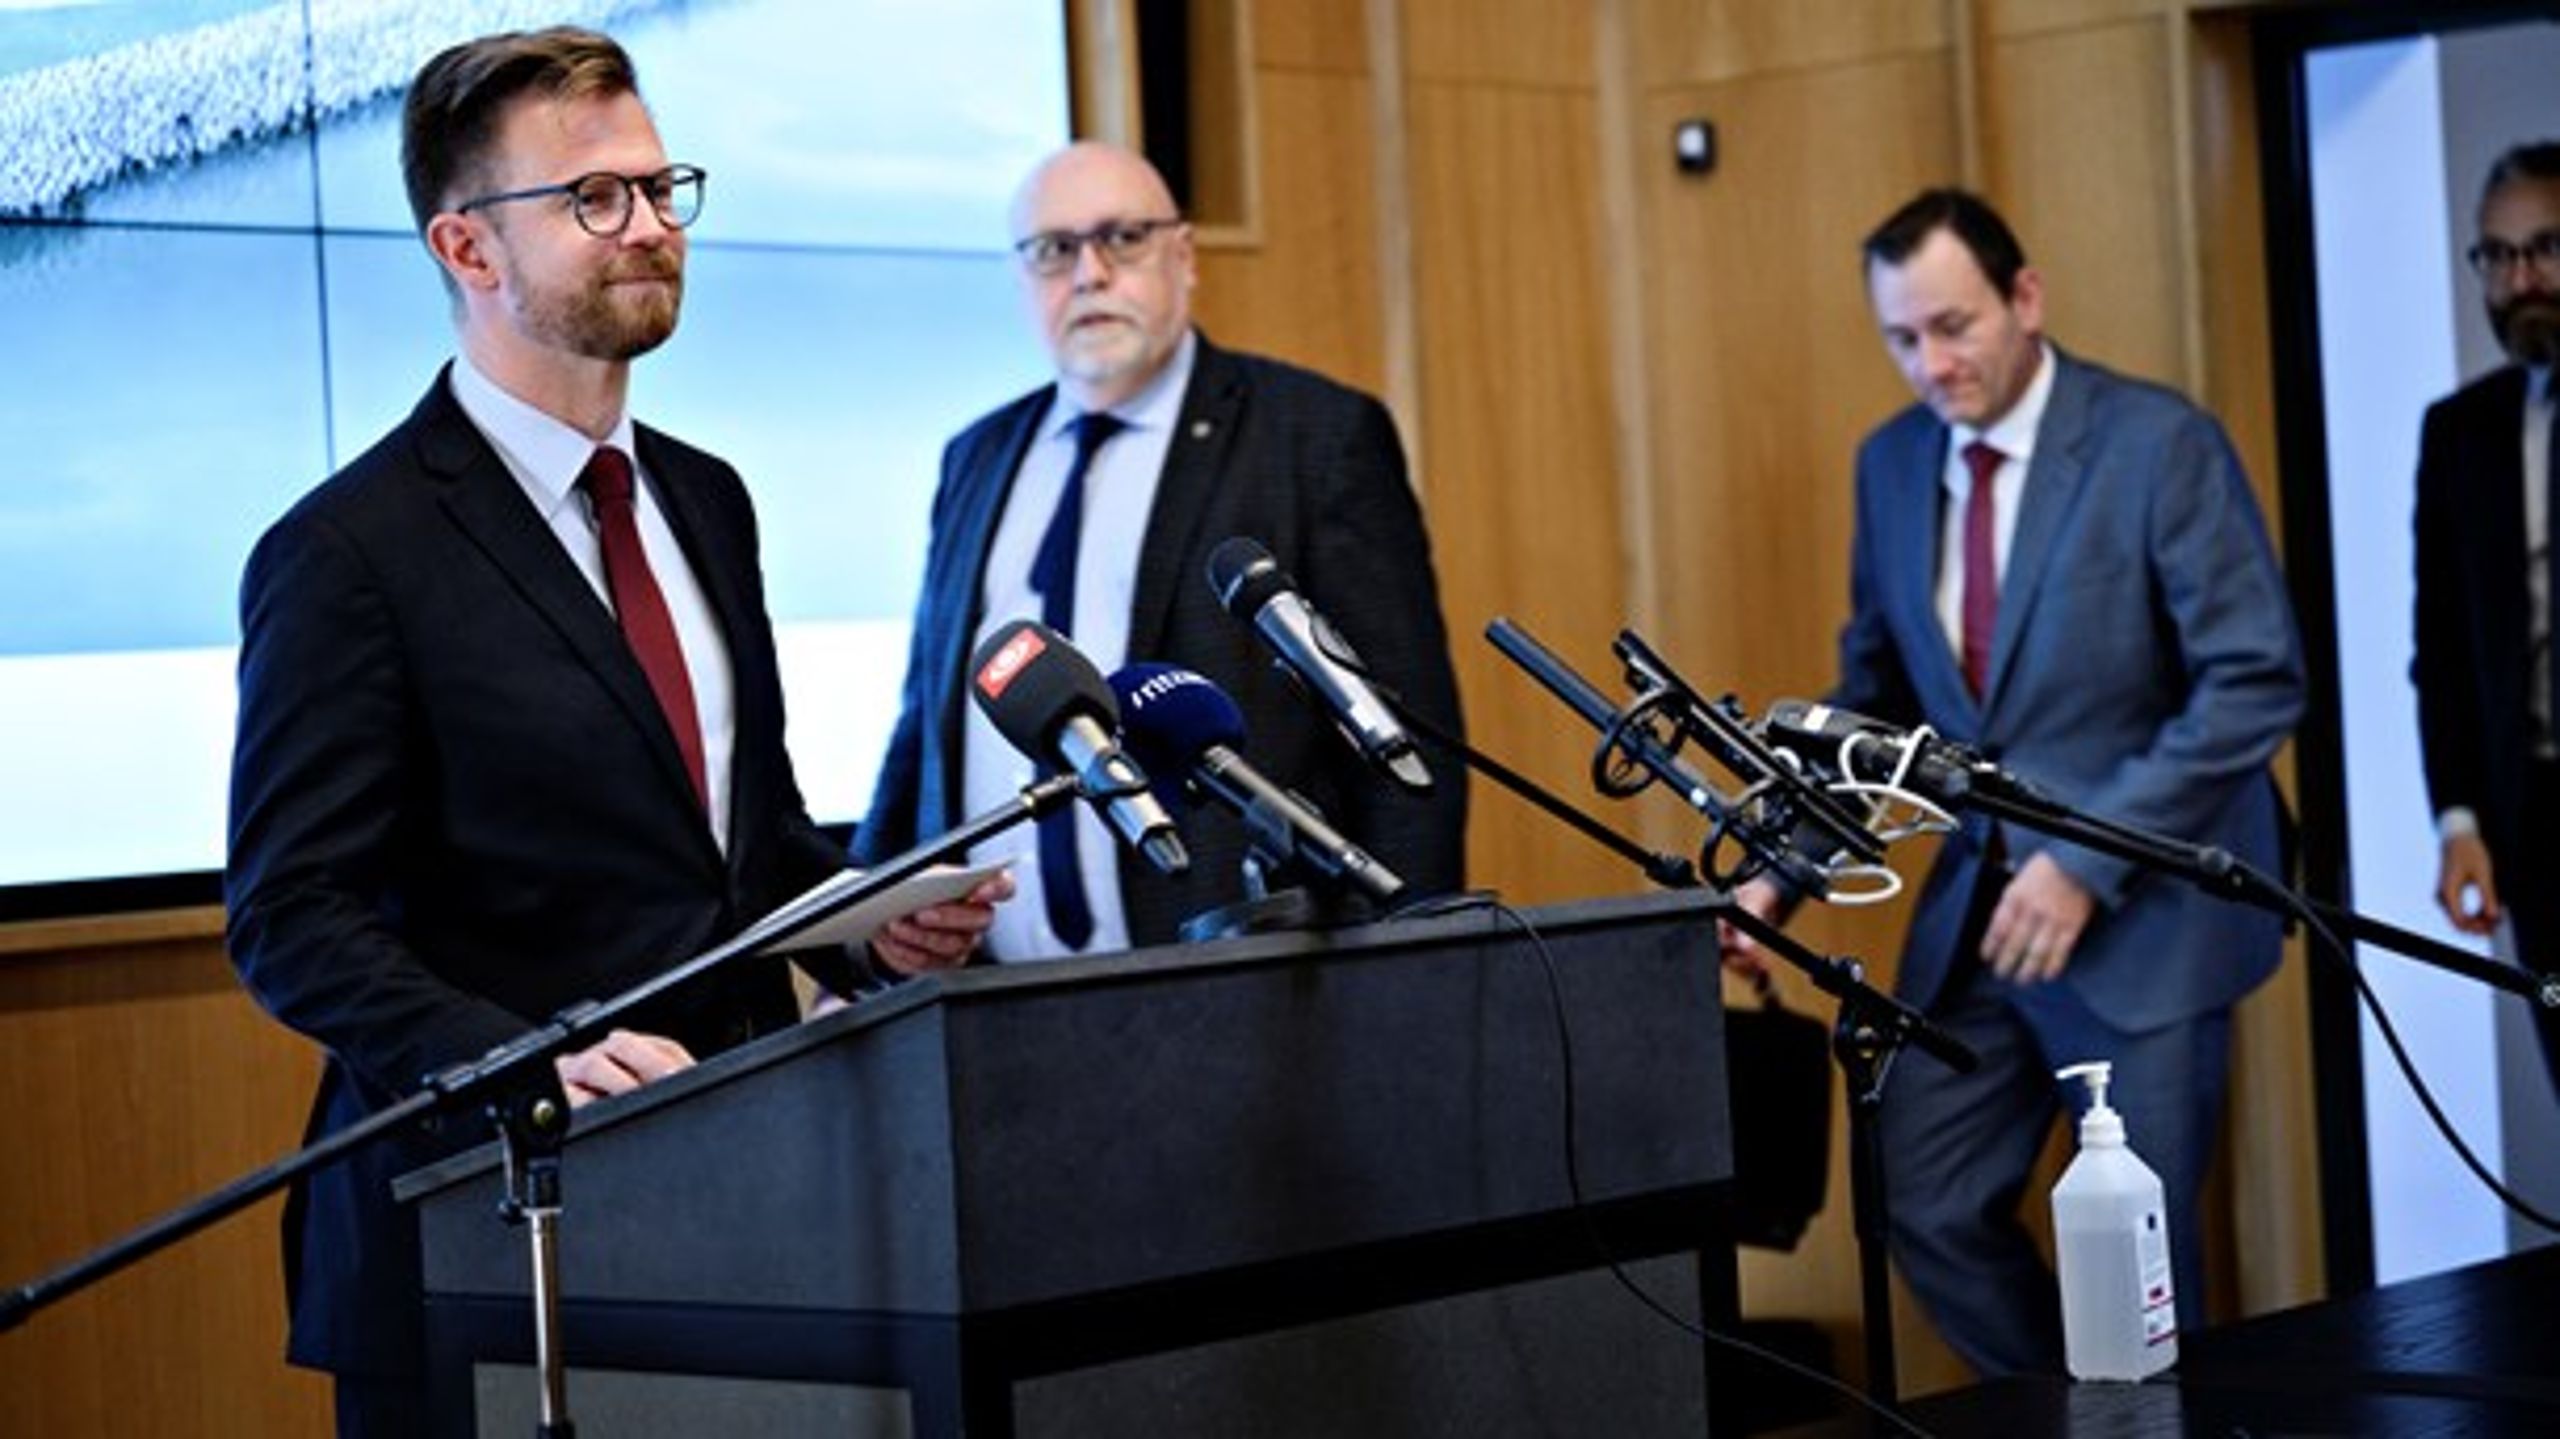 S-regeringen har skrottet infrastrukturplanen, som VLAK-regeringen indgik i 2019 med Dansk Folkeparti.